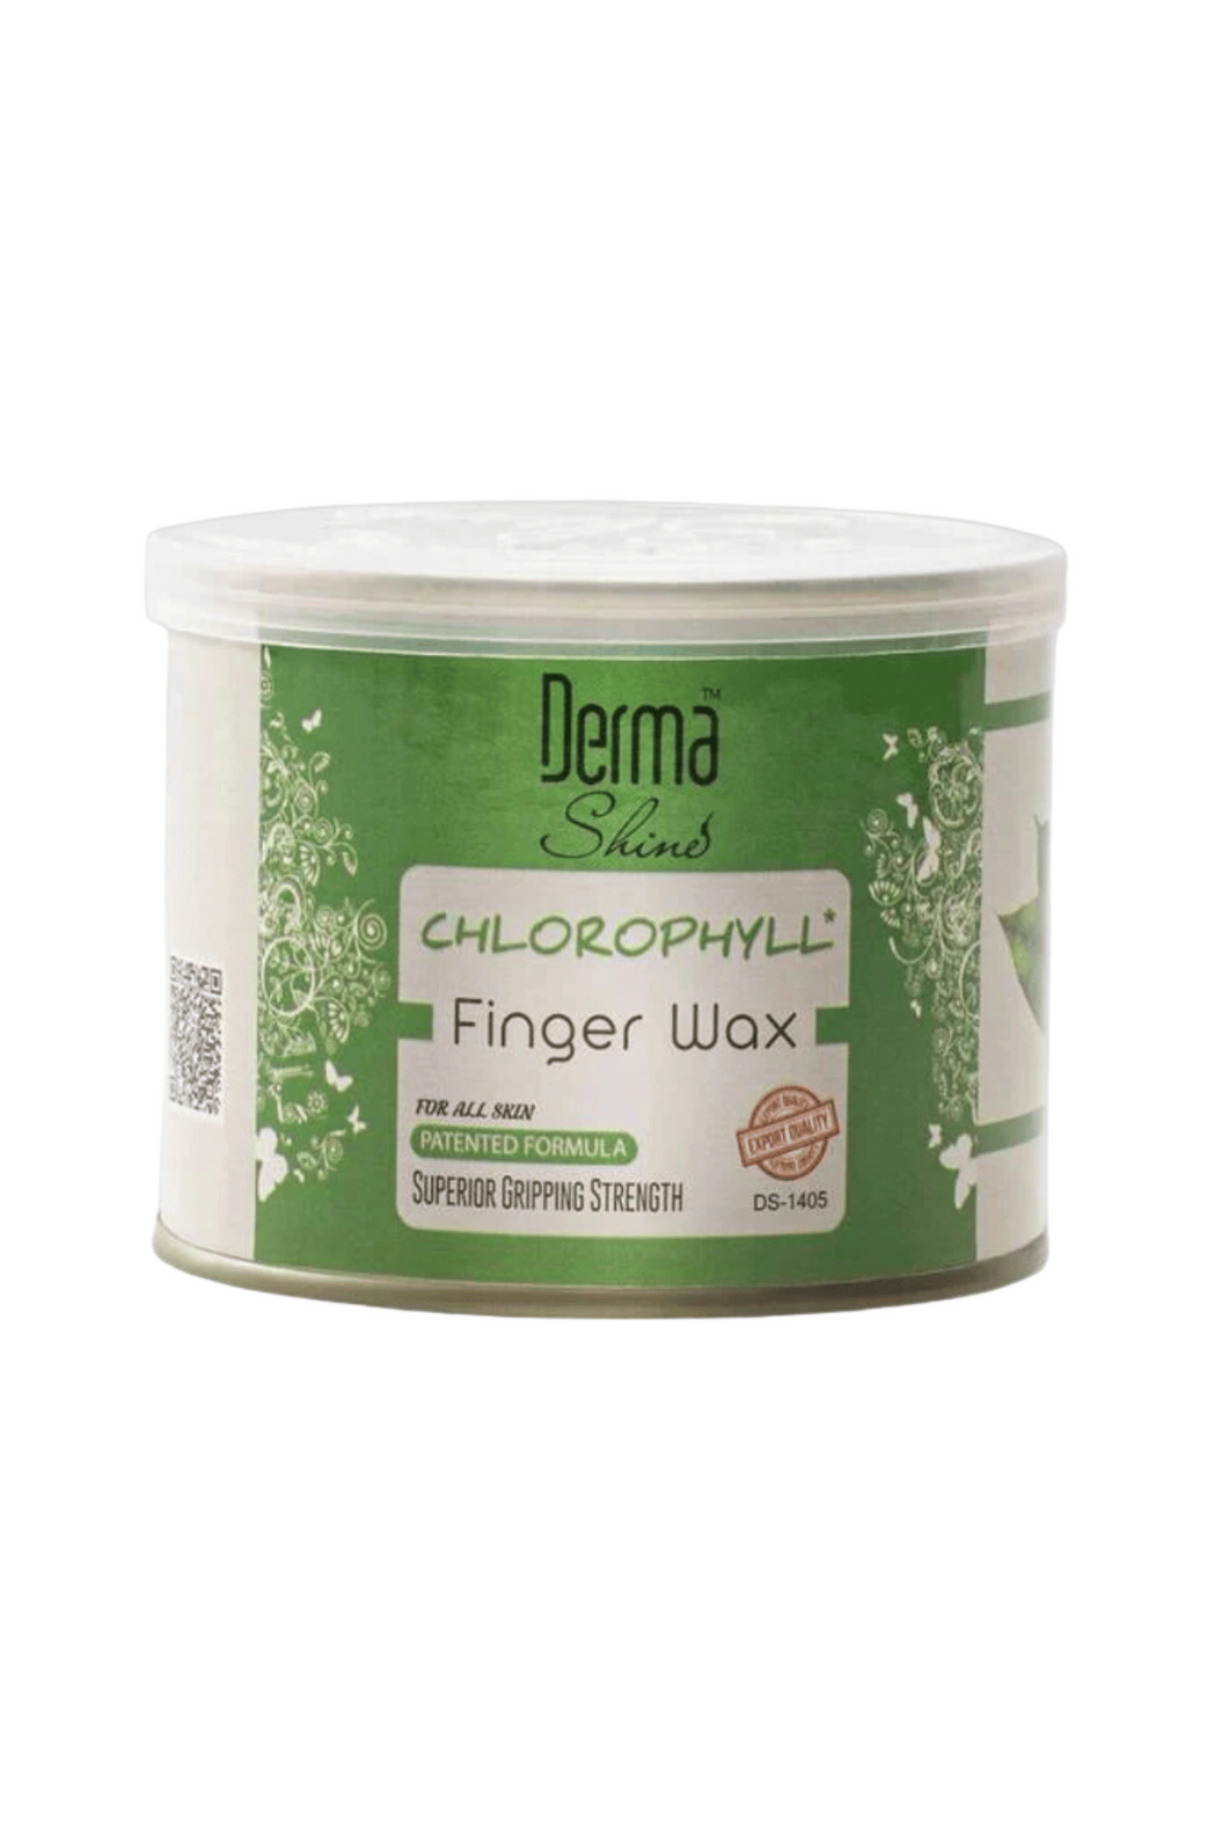 derma shine finger wax chlorophyll 250g